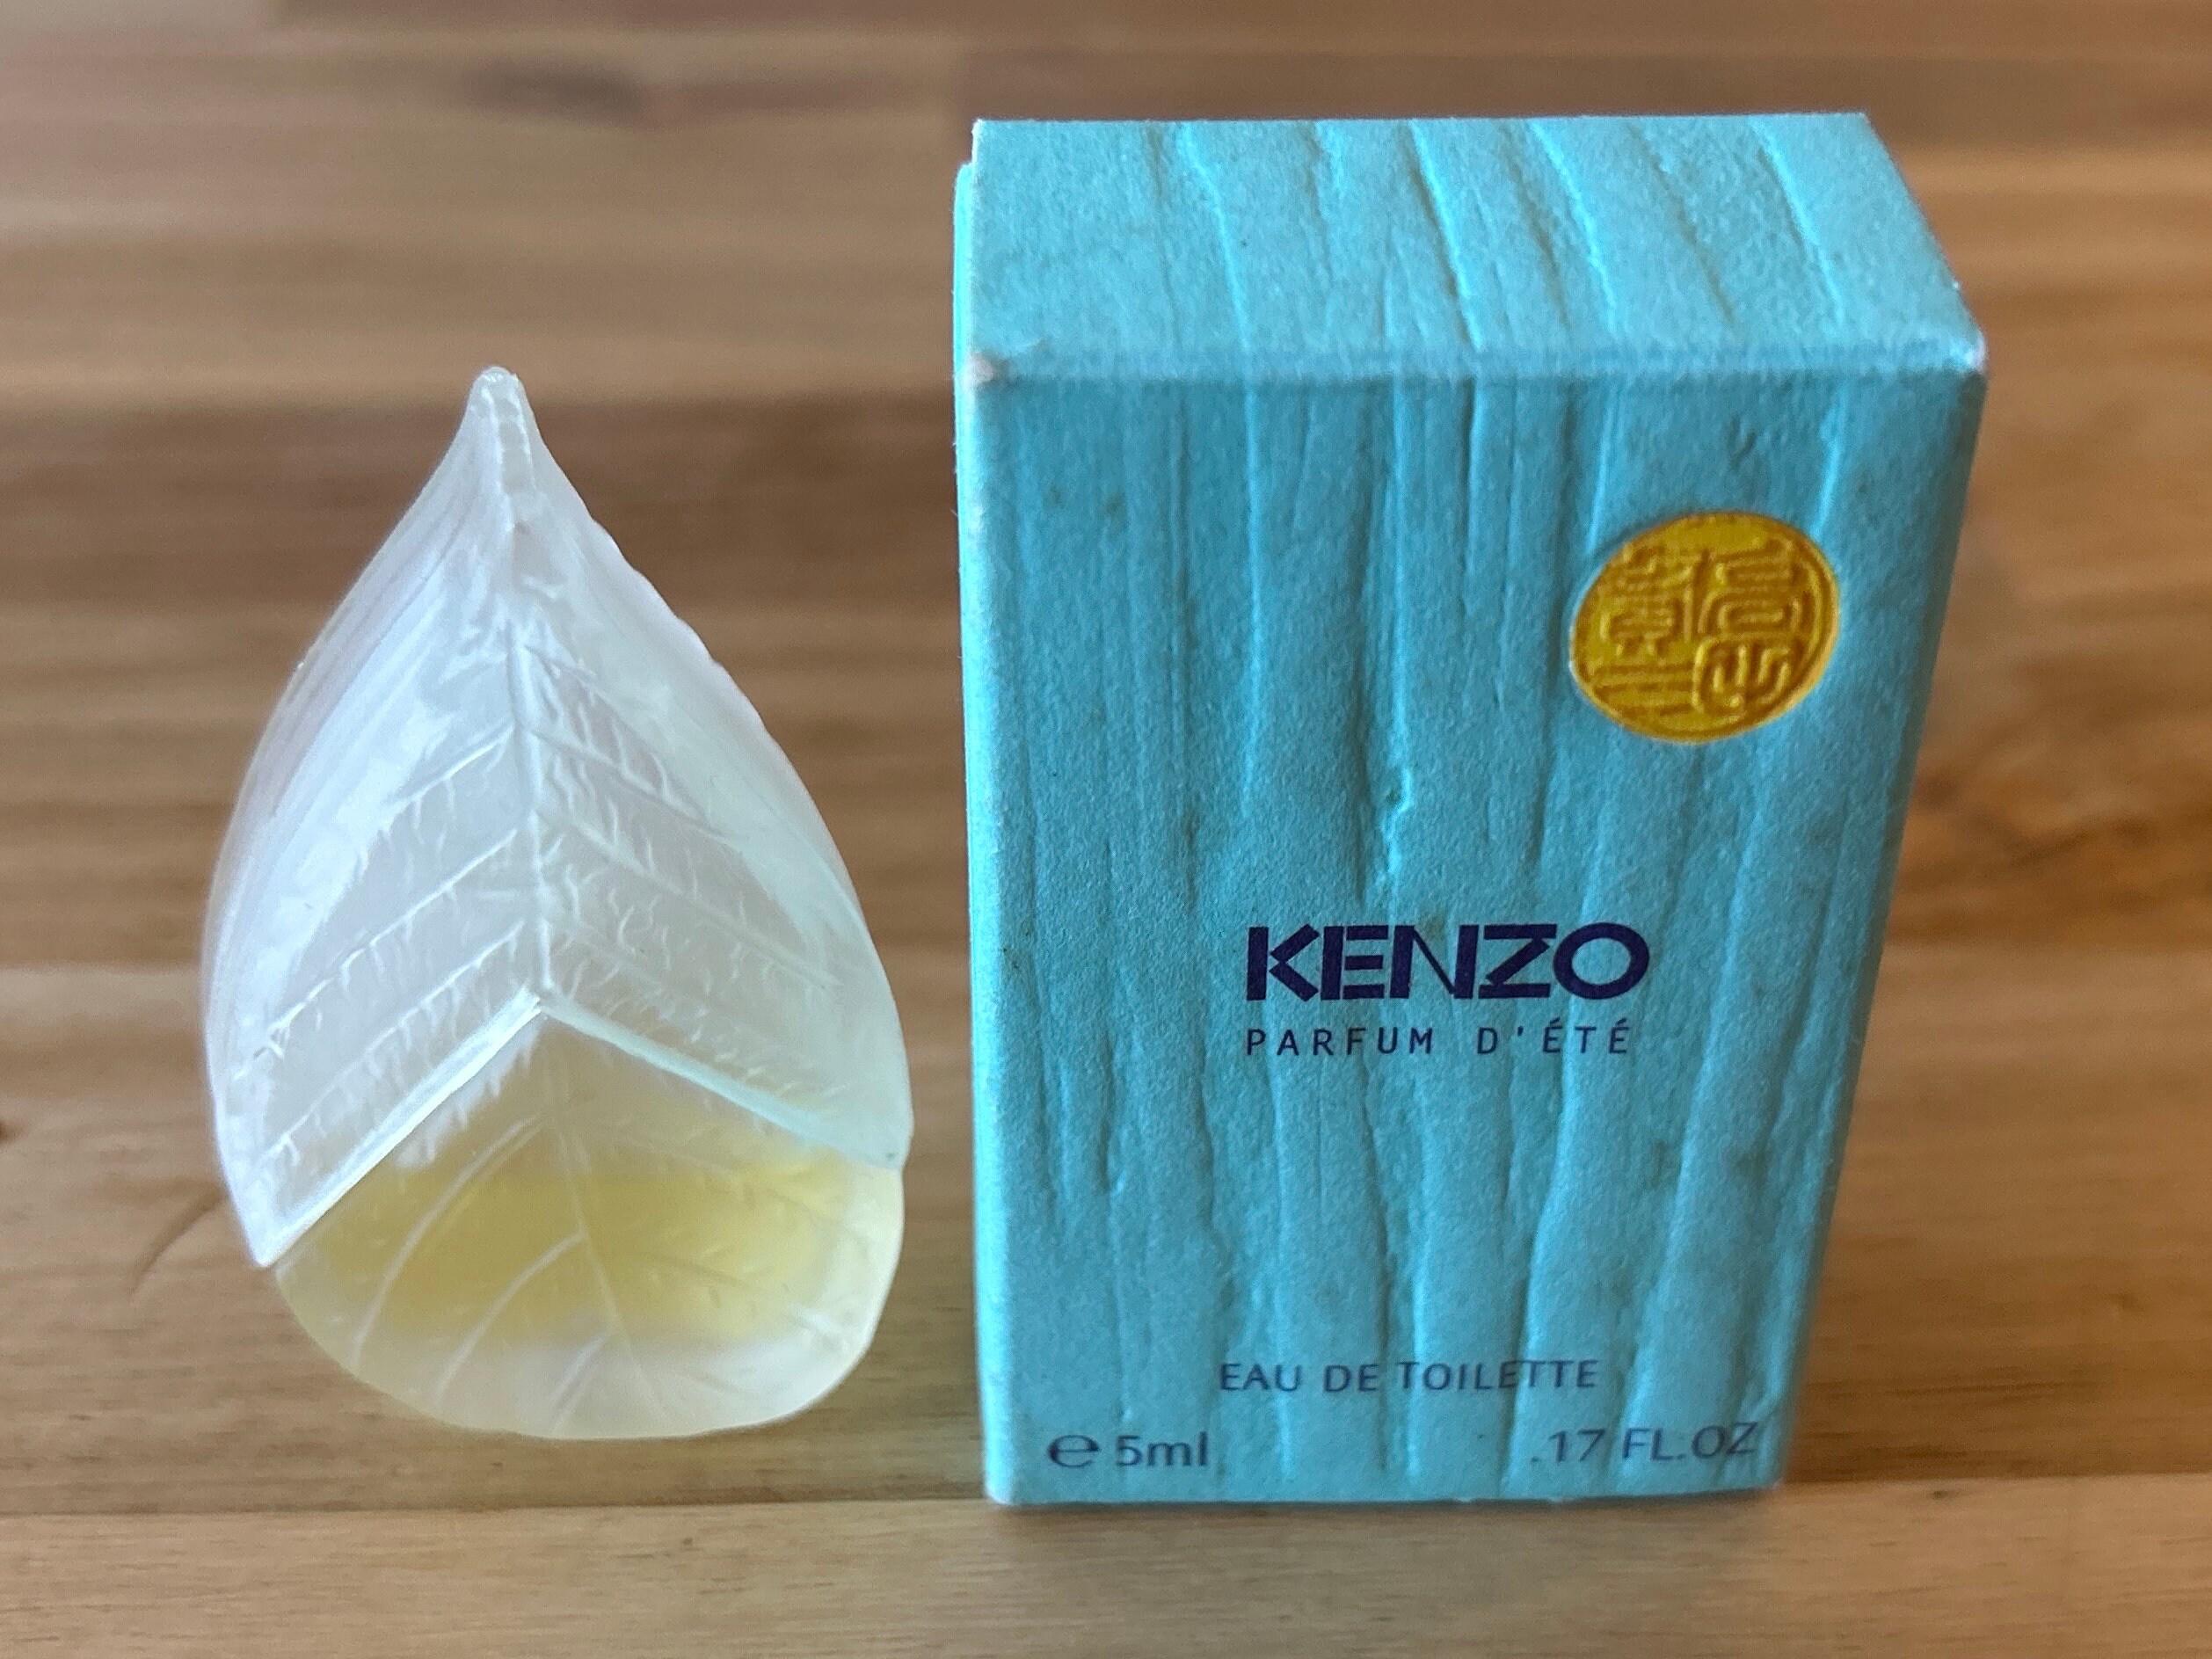 Kenzo Parfum Dete Vintage 5ml Miniature Eau De Toilette Spray - Etsy